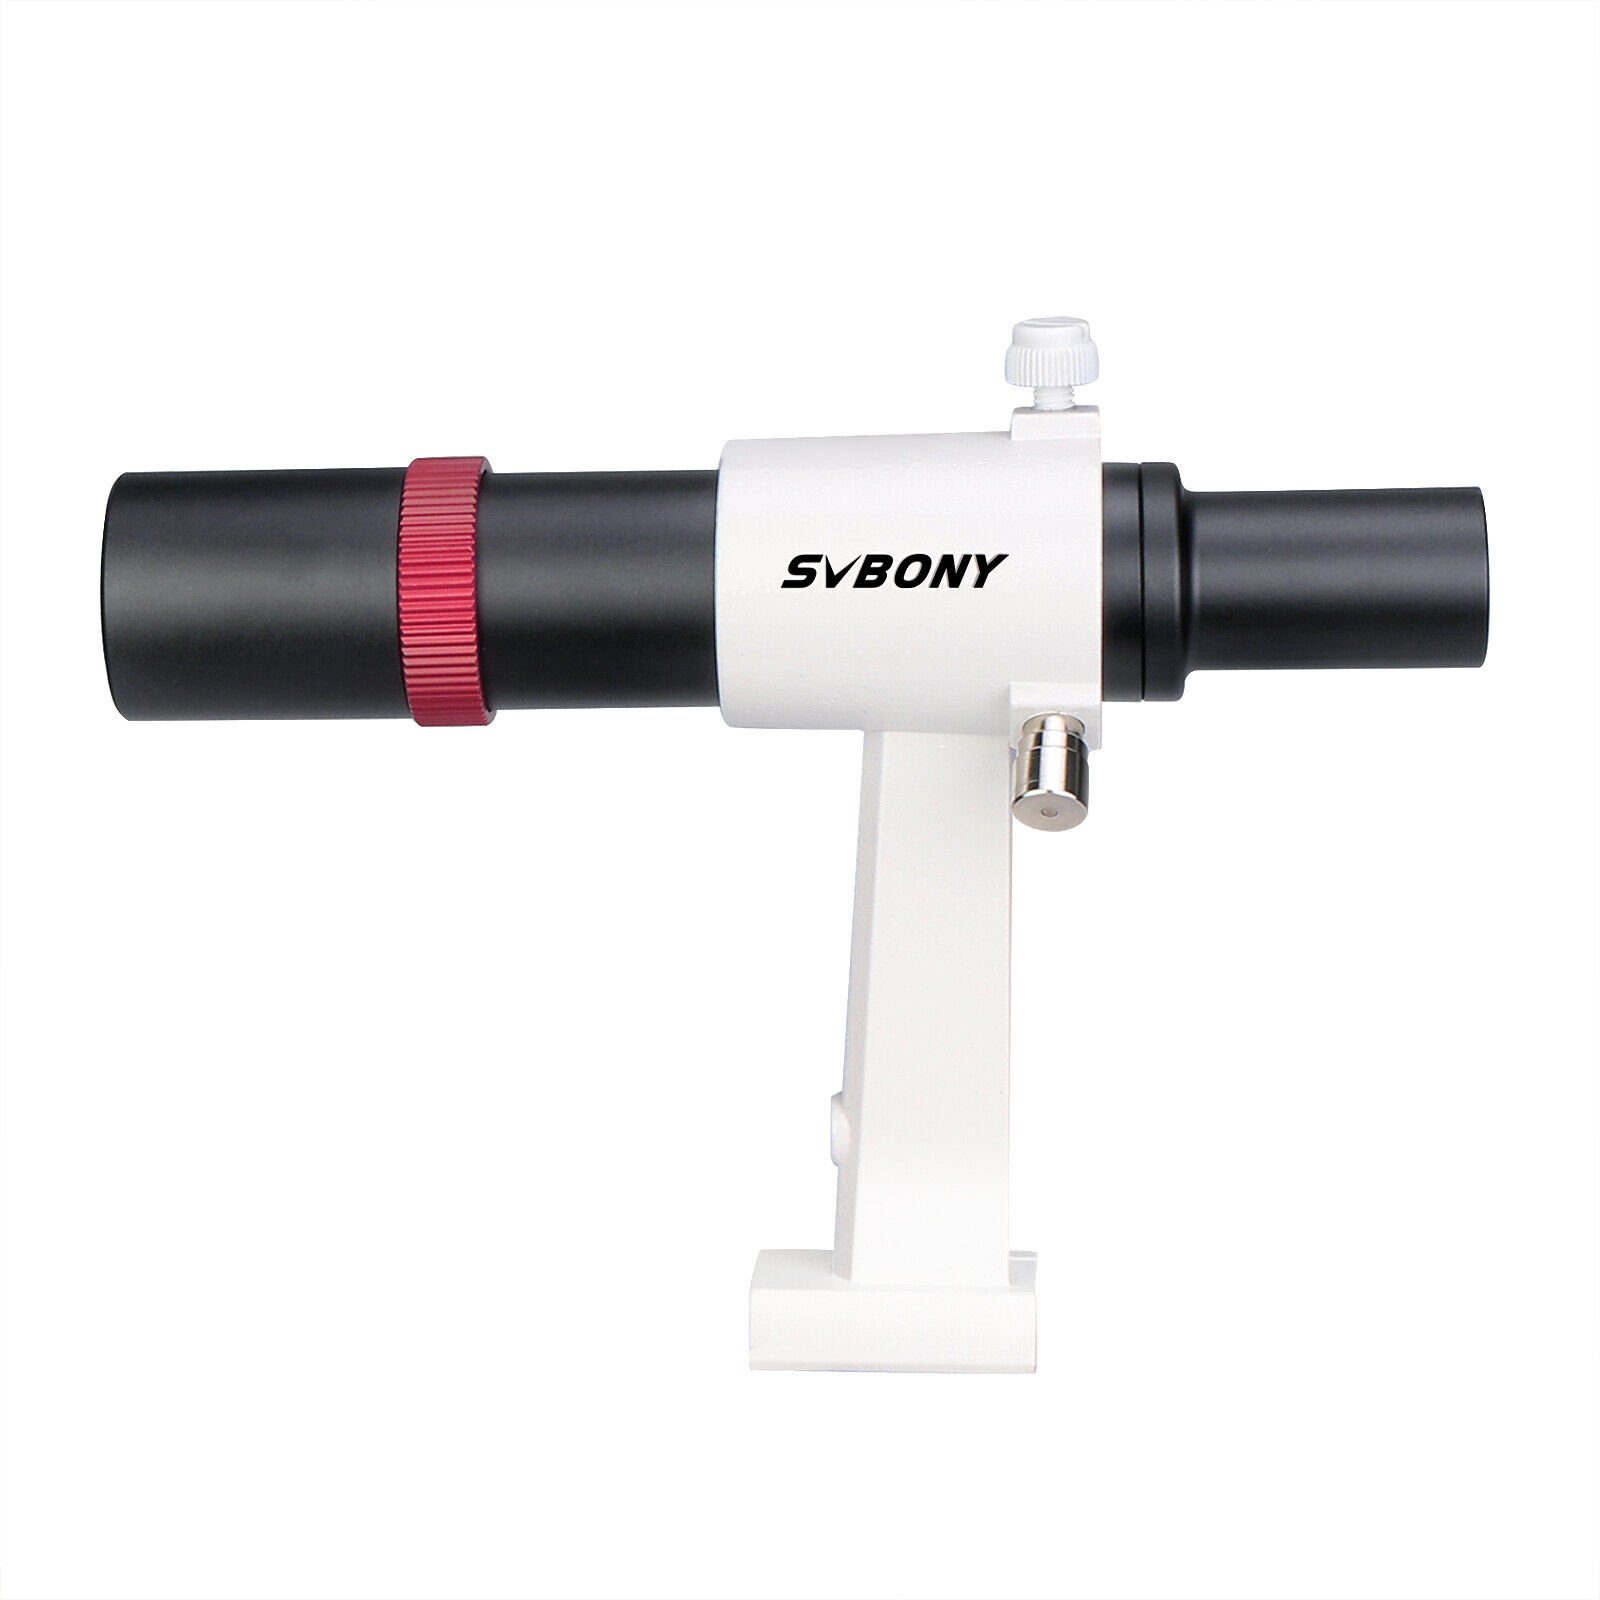 SVBONY SV182 Sucherfernrohr Teleskop 6x30 Zielfernrohr (Achromatischer FMC- Sucher aus Metall mit Fadenkreuz)